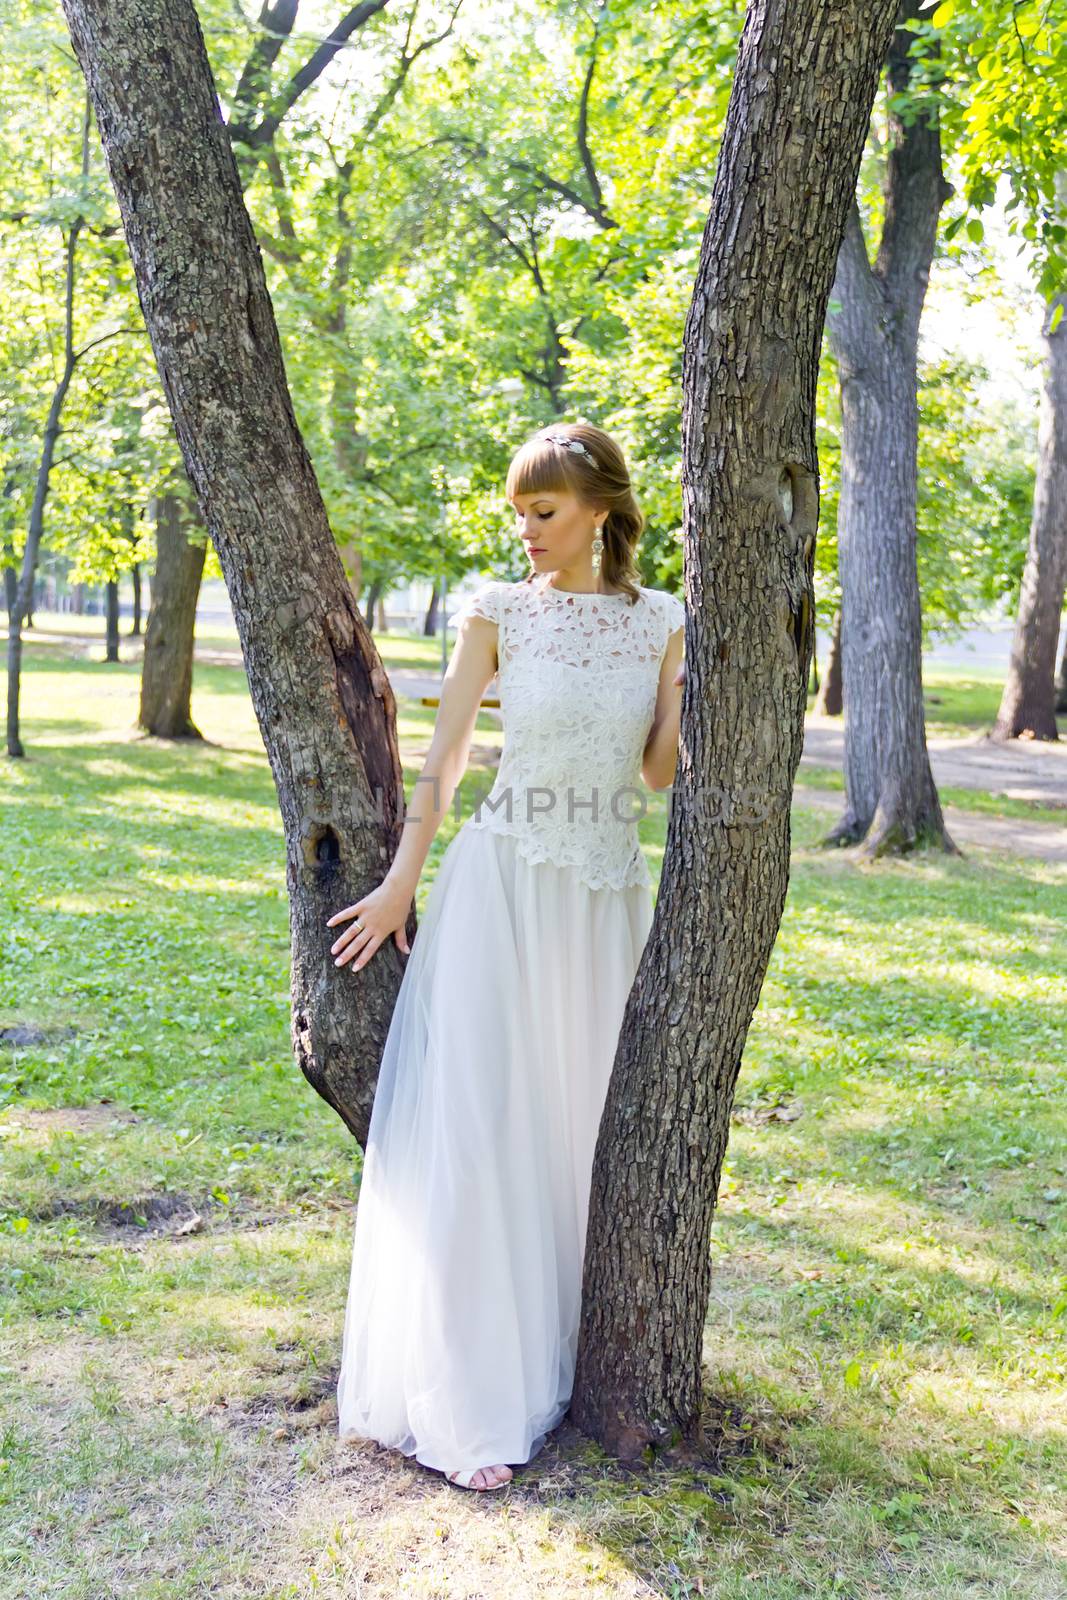 Bride in white lace dress standing near tree by Julialine